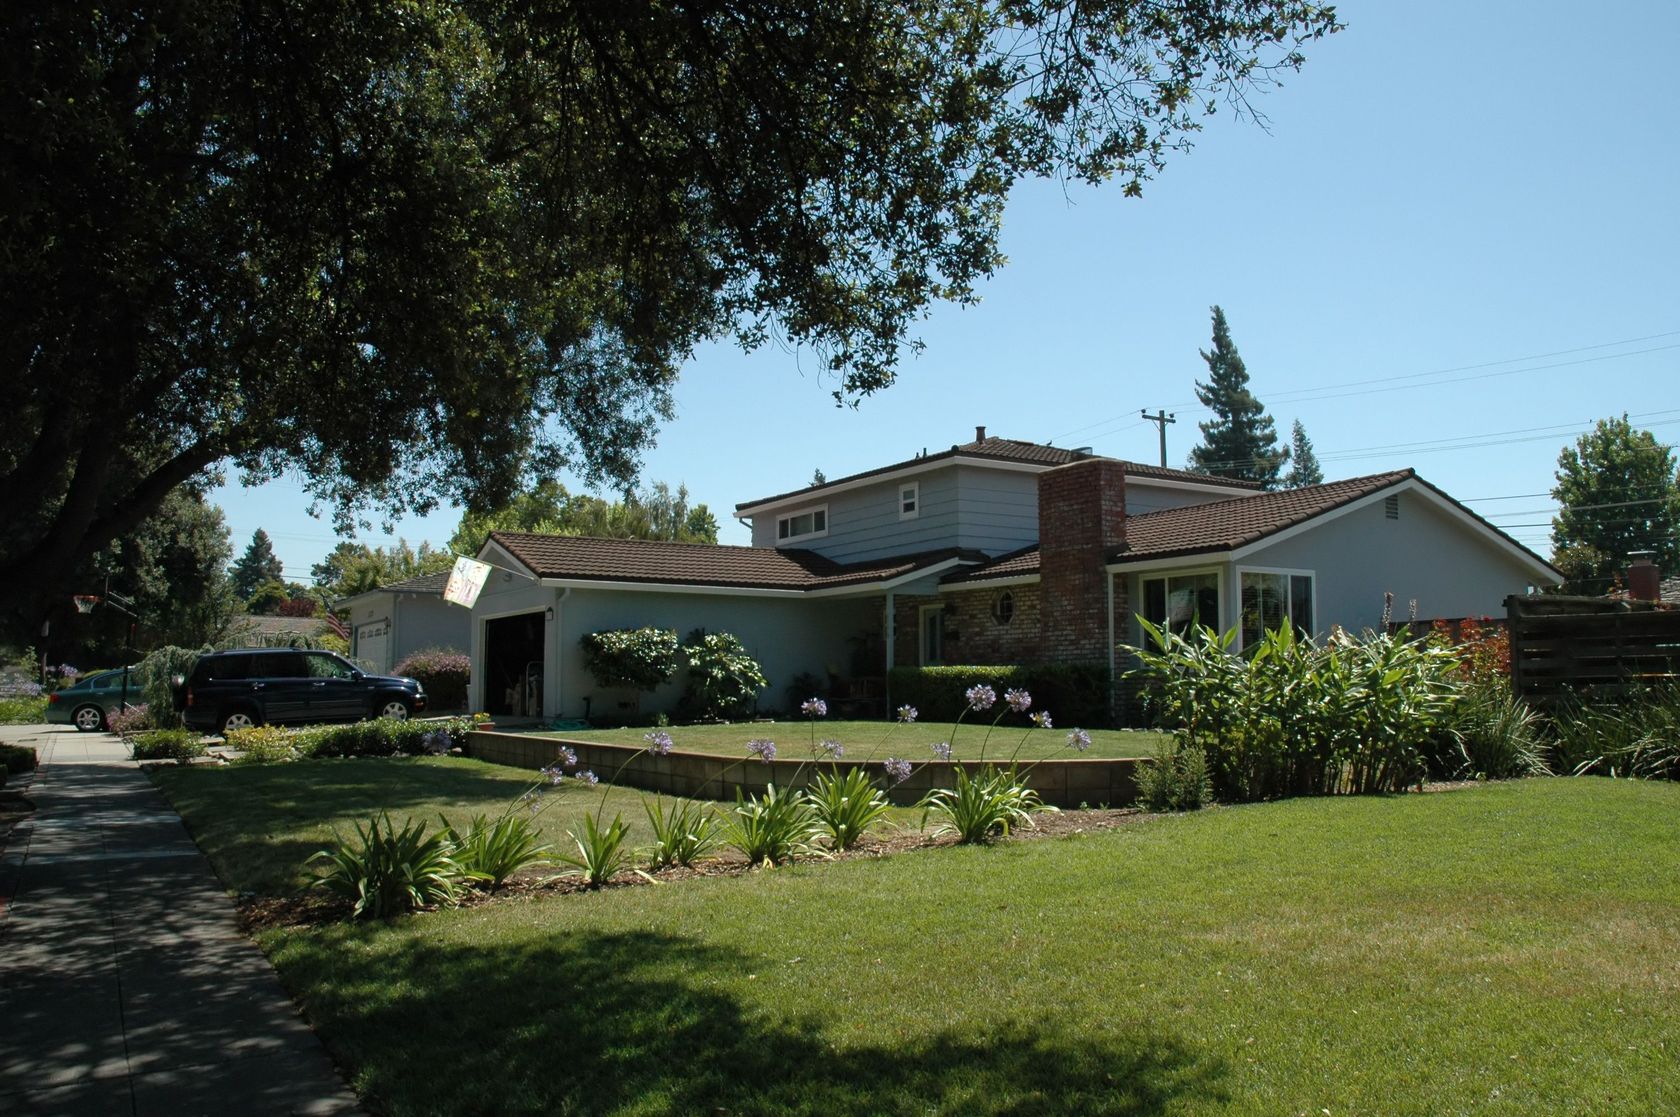 221889 - silicon valley residence, sunnyvale, california